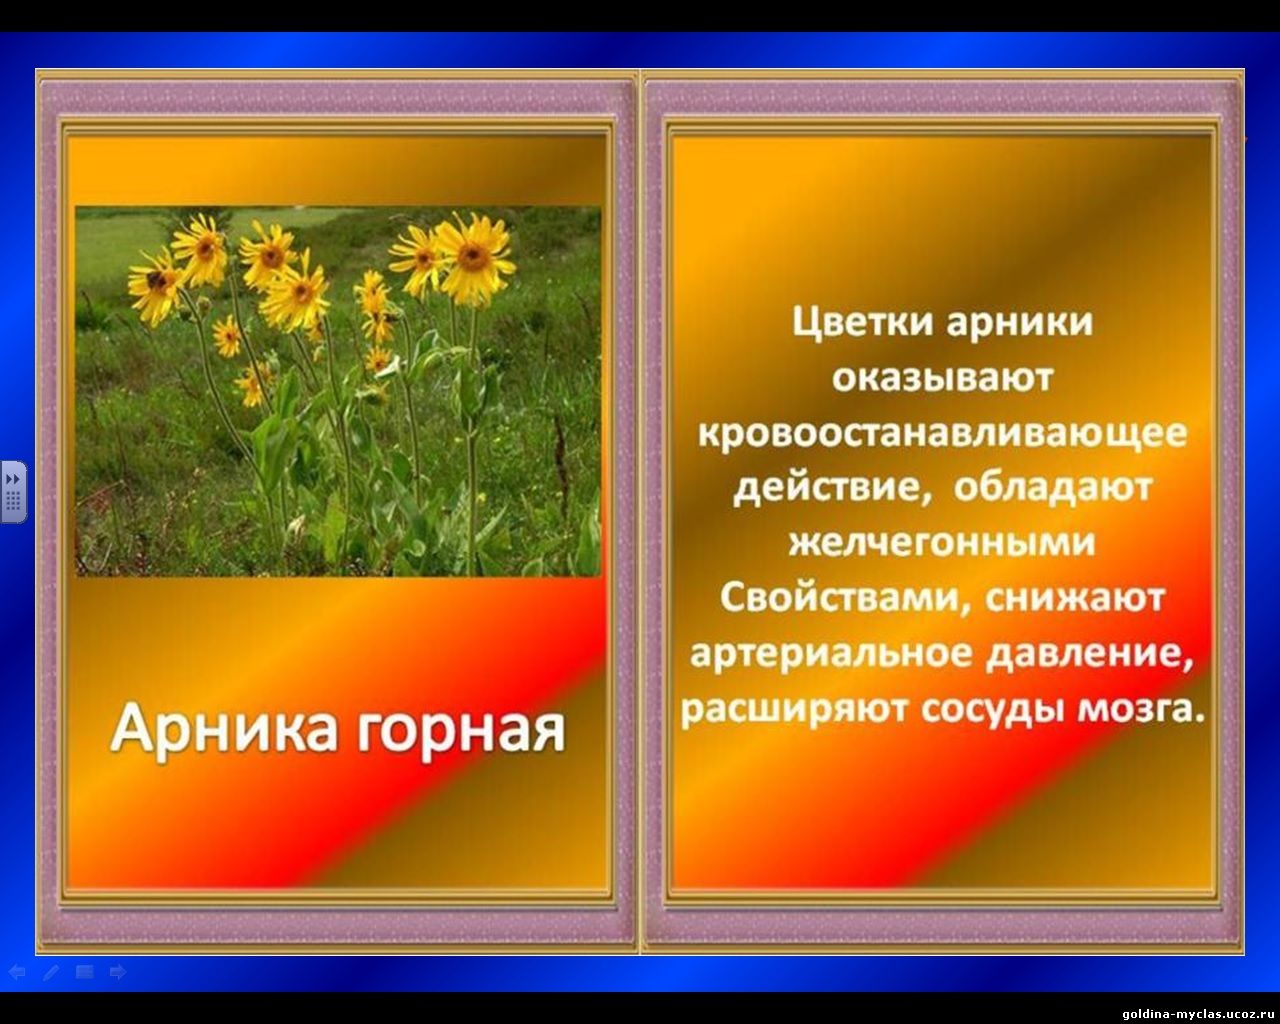 http://torrent-load.at.ua/ М. А. Носкова Интерактивная книга "Лекарственные растения" (вн. работа, 1-4 классы) | 644 кб | Нажмите, для просмотра в полном размере...